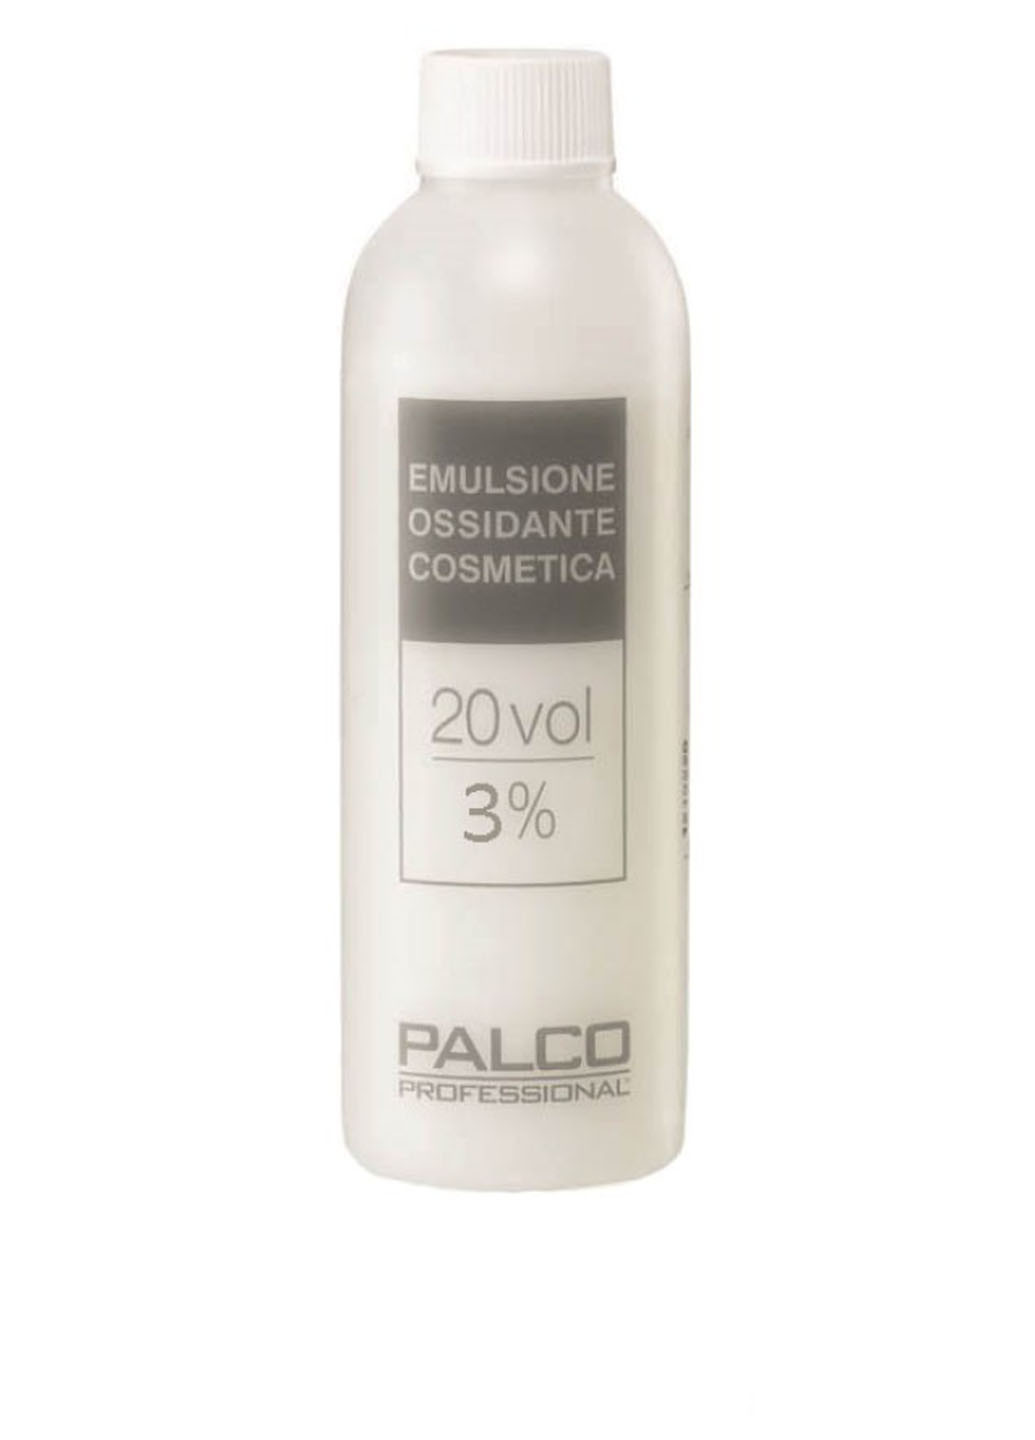 Окислительная эмульсия Ossidante Cosmetica 3%, 150 мл Palco Professional (76060525)